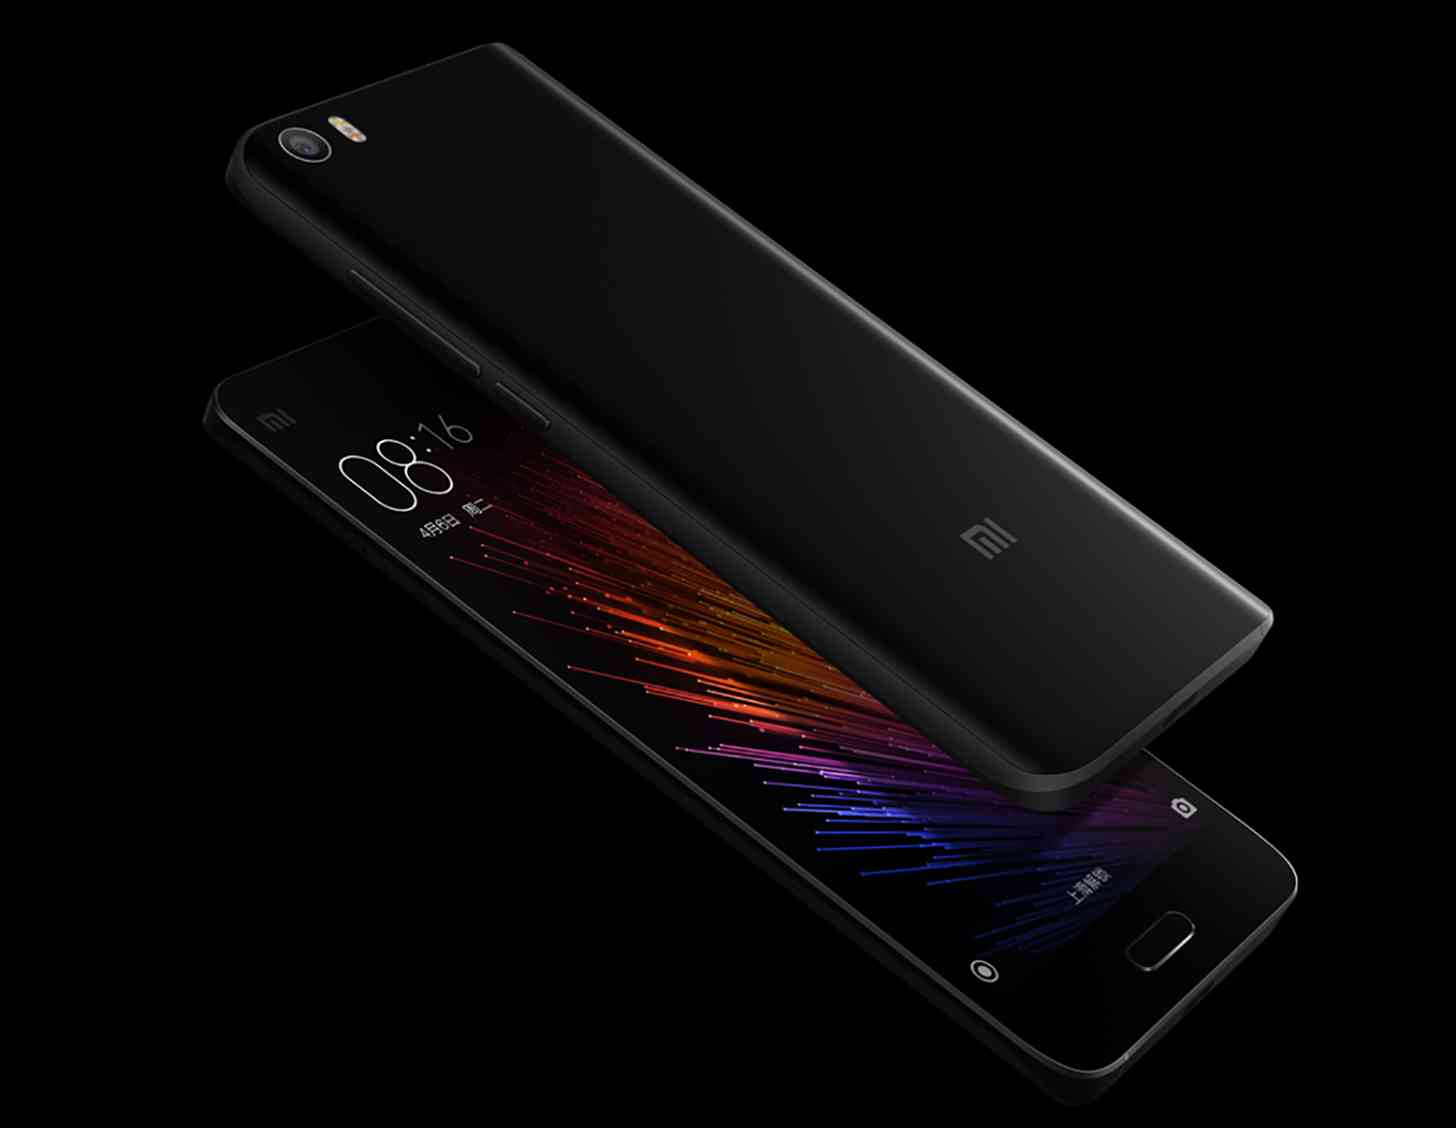 Xiaomi Mi 5 black